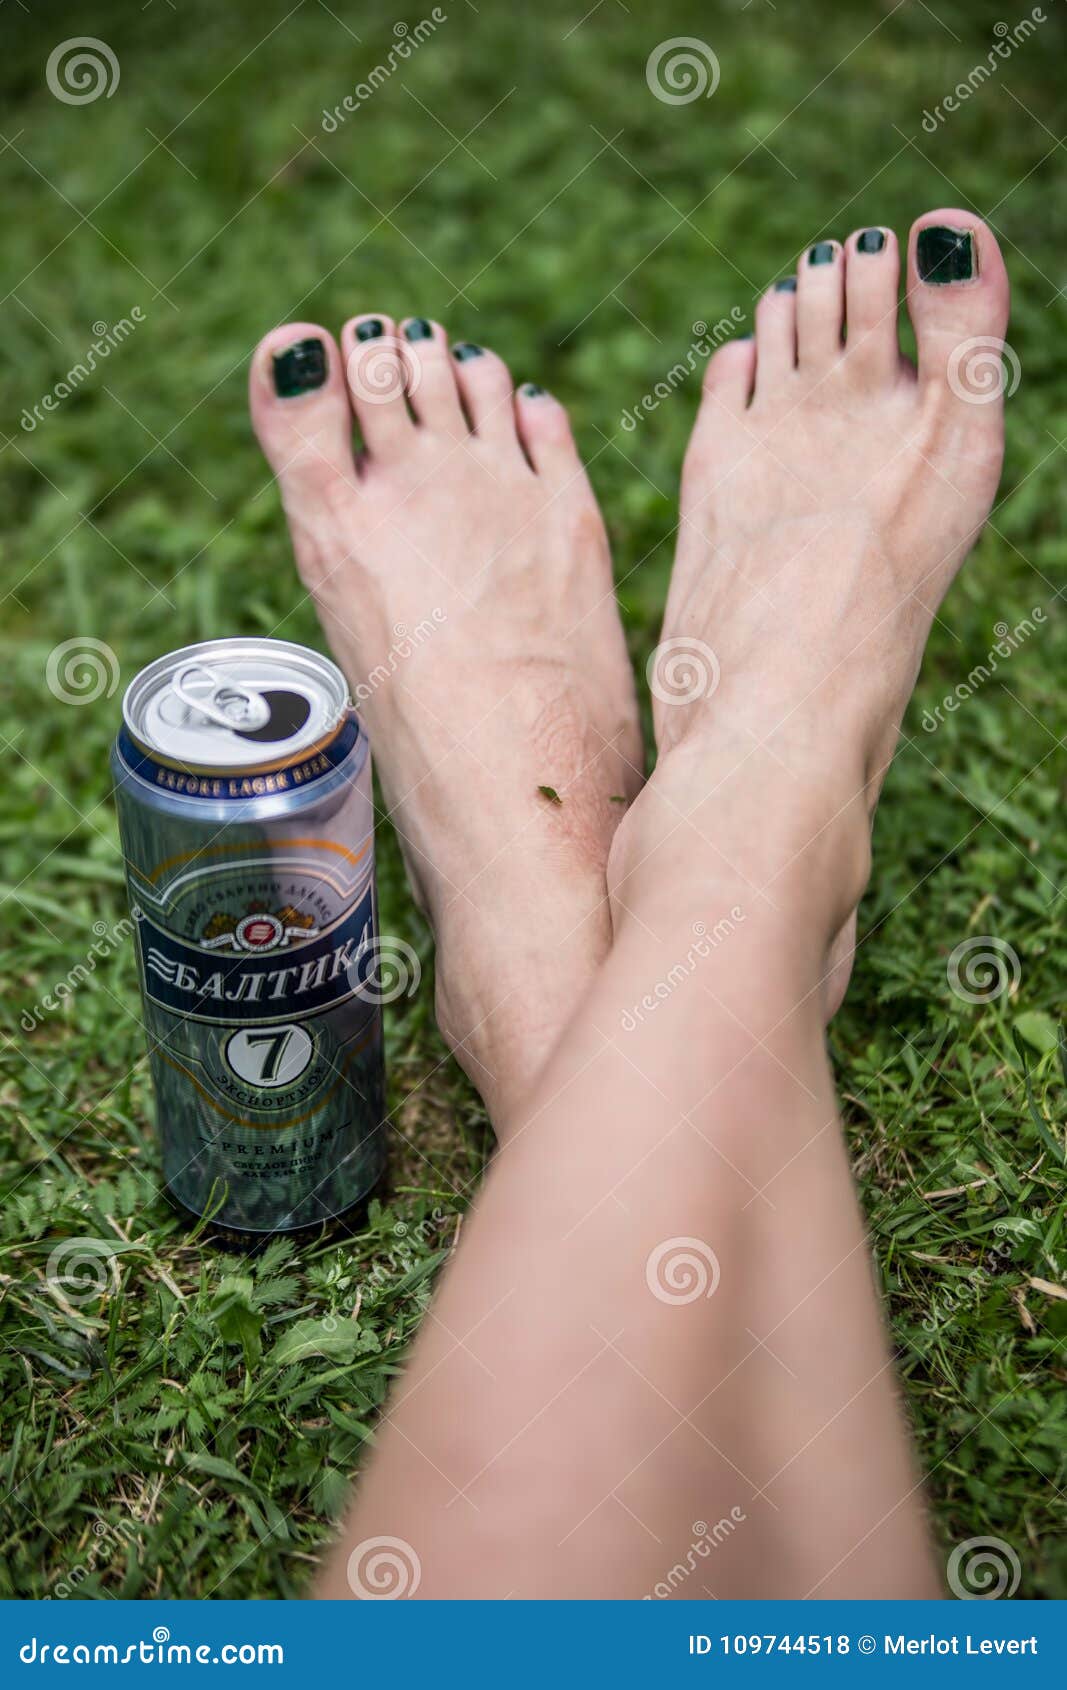 Пивные ножки. Пиво с ногами. Женские ноги и пиво. Пивные ноги пивные ноги.